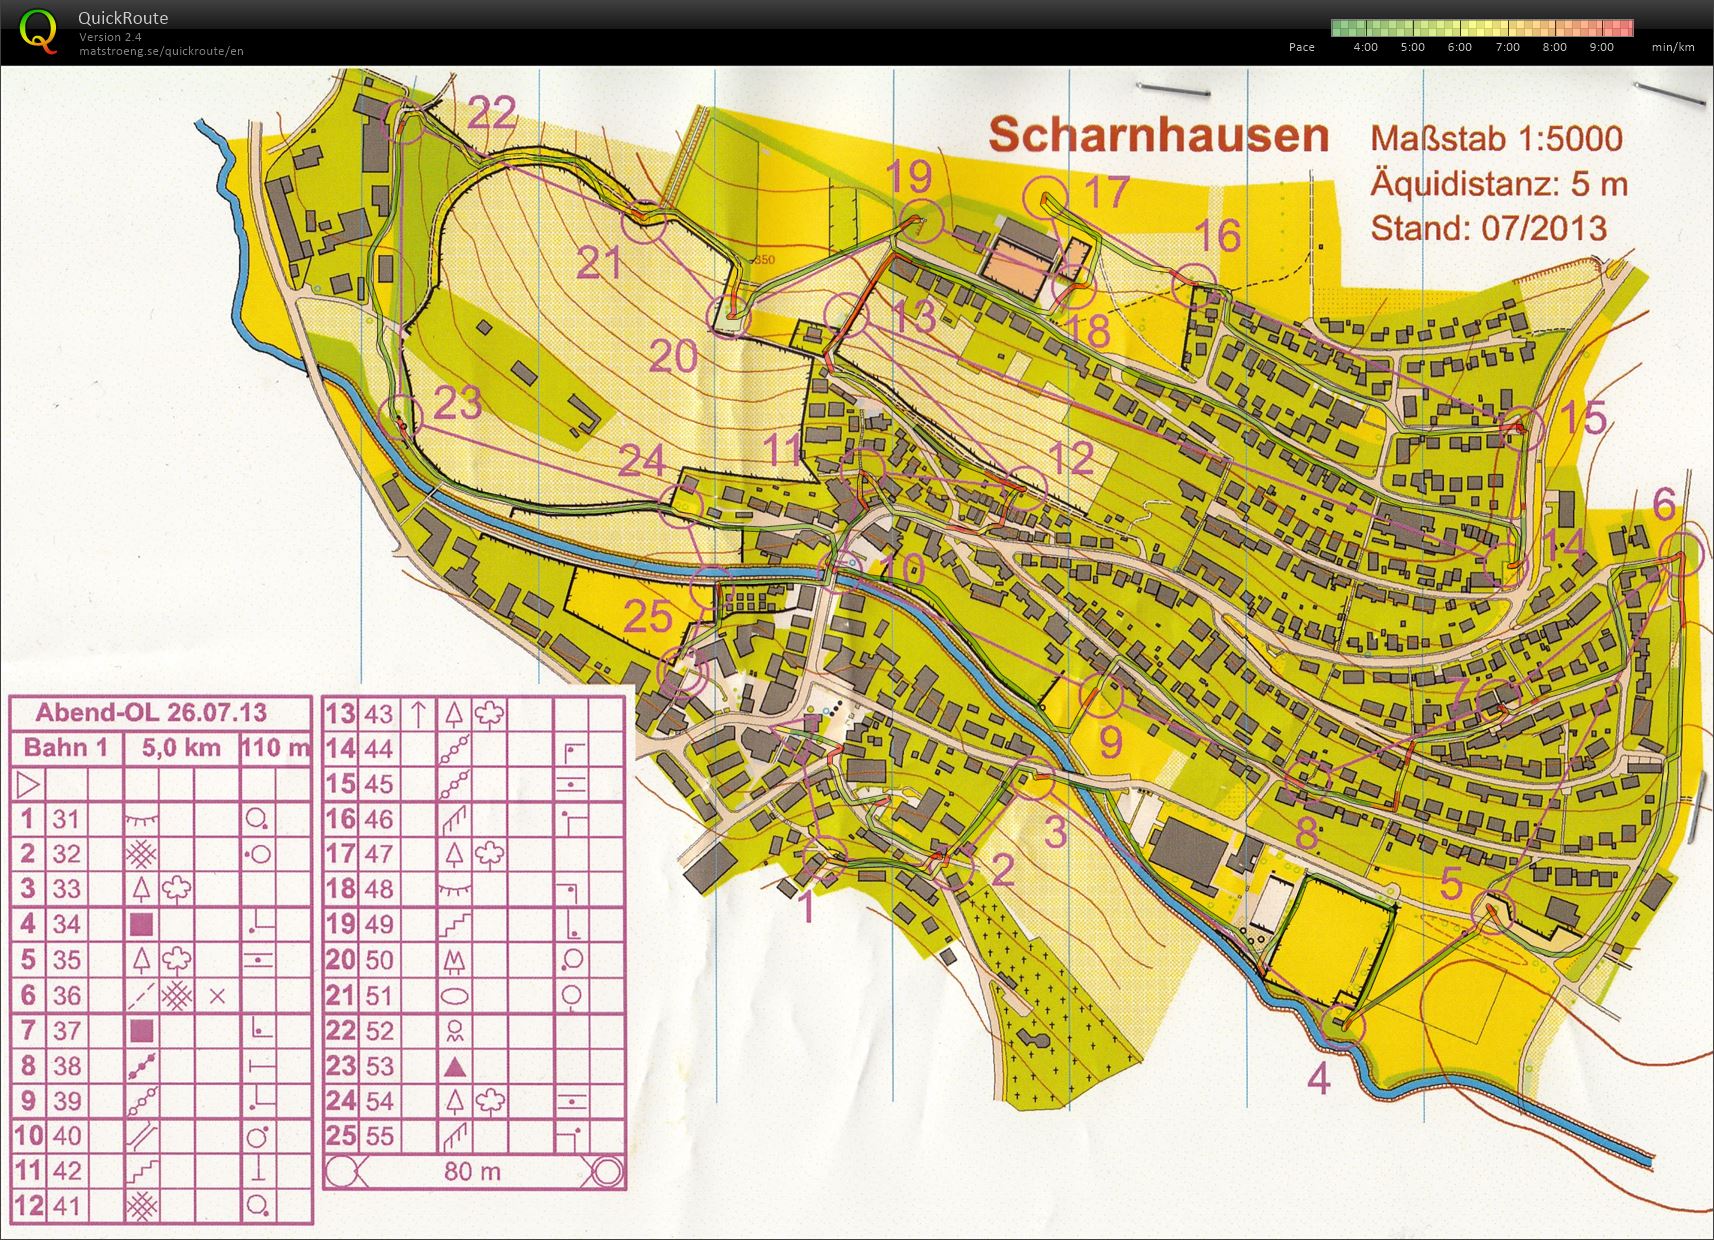 Training Scharnhausen (26/07/2013)